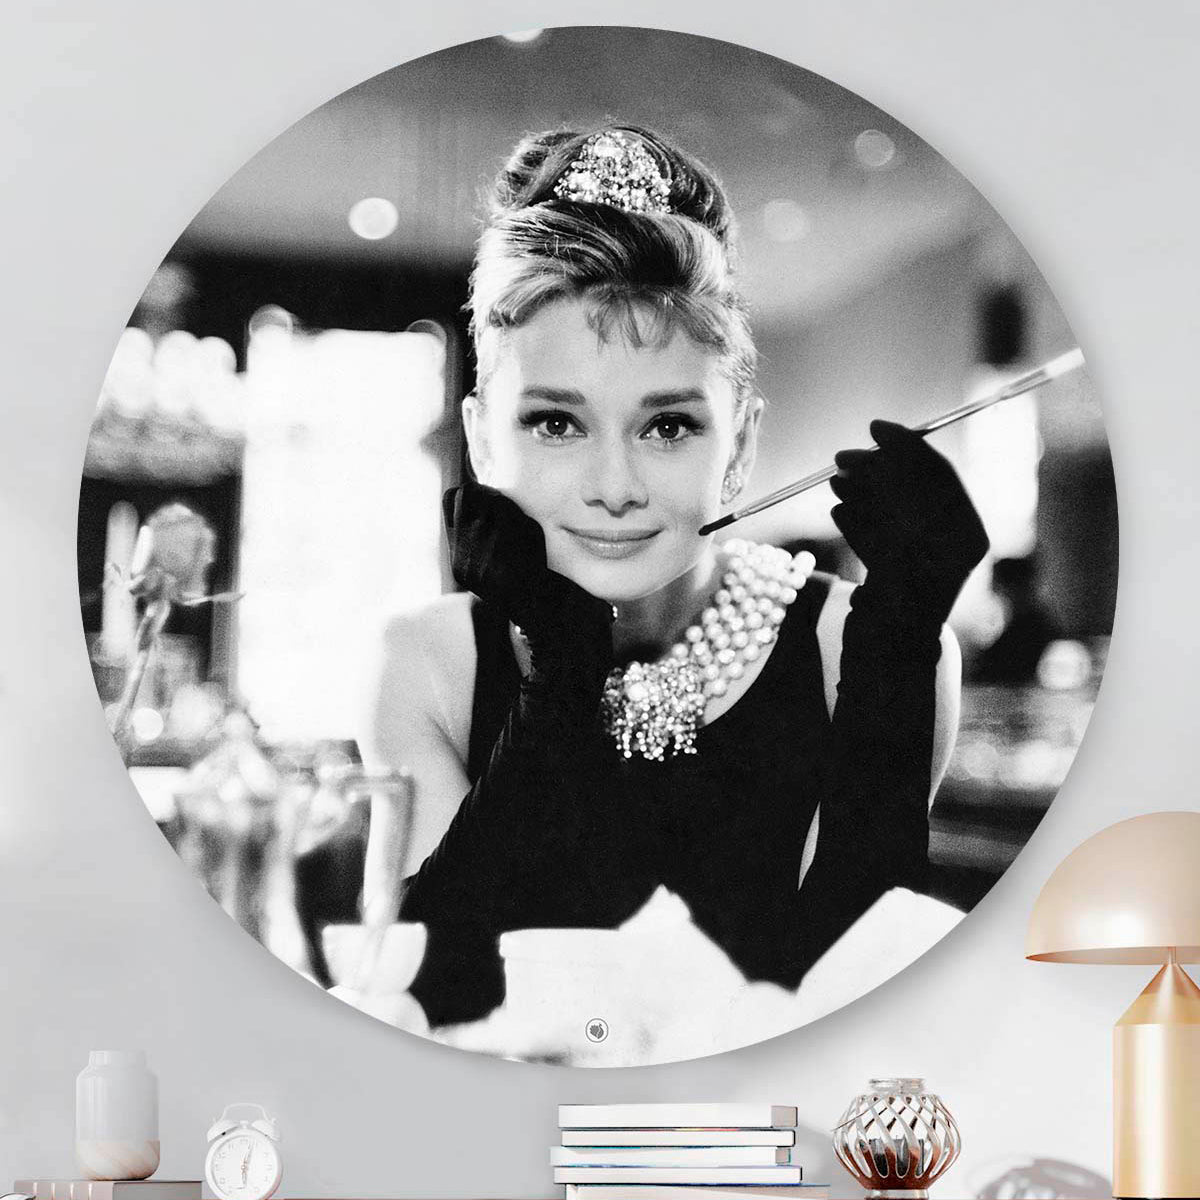 Muurcirkel die hangt aan de muur met Audrey Hepburn met een sigaret in haar hand aan het ontbijt.